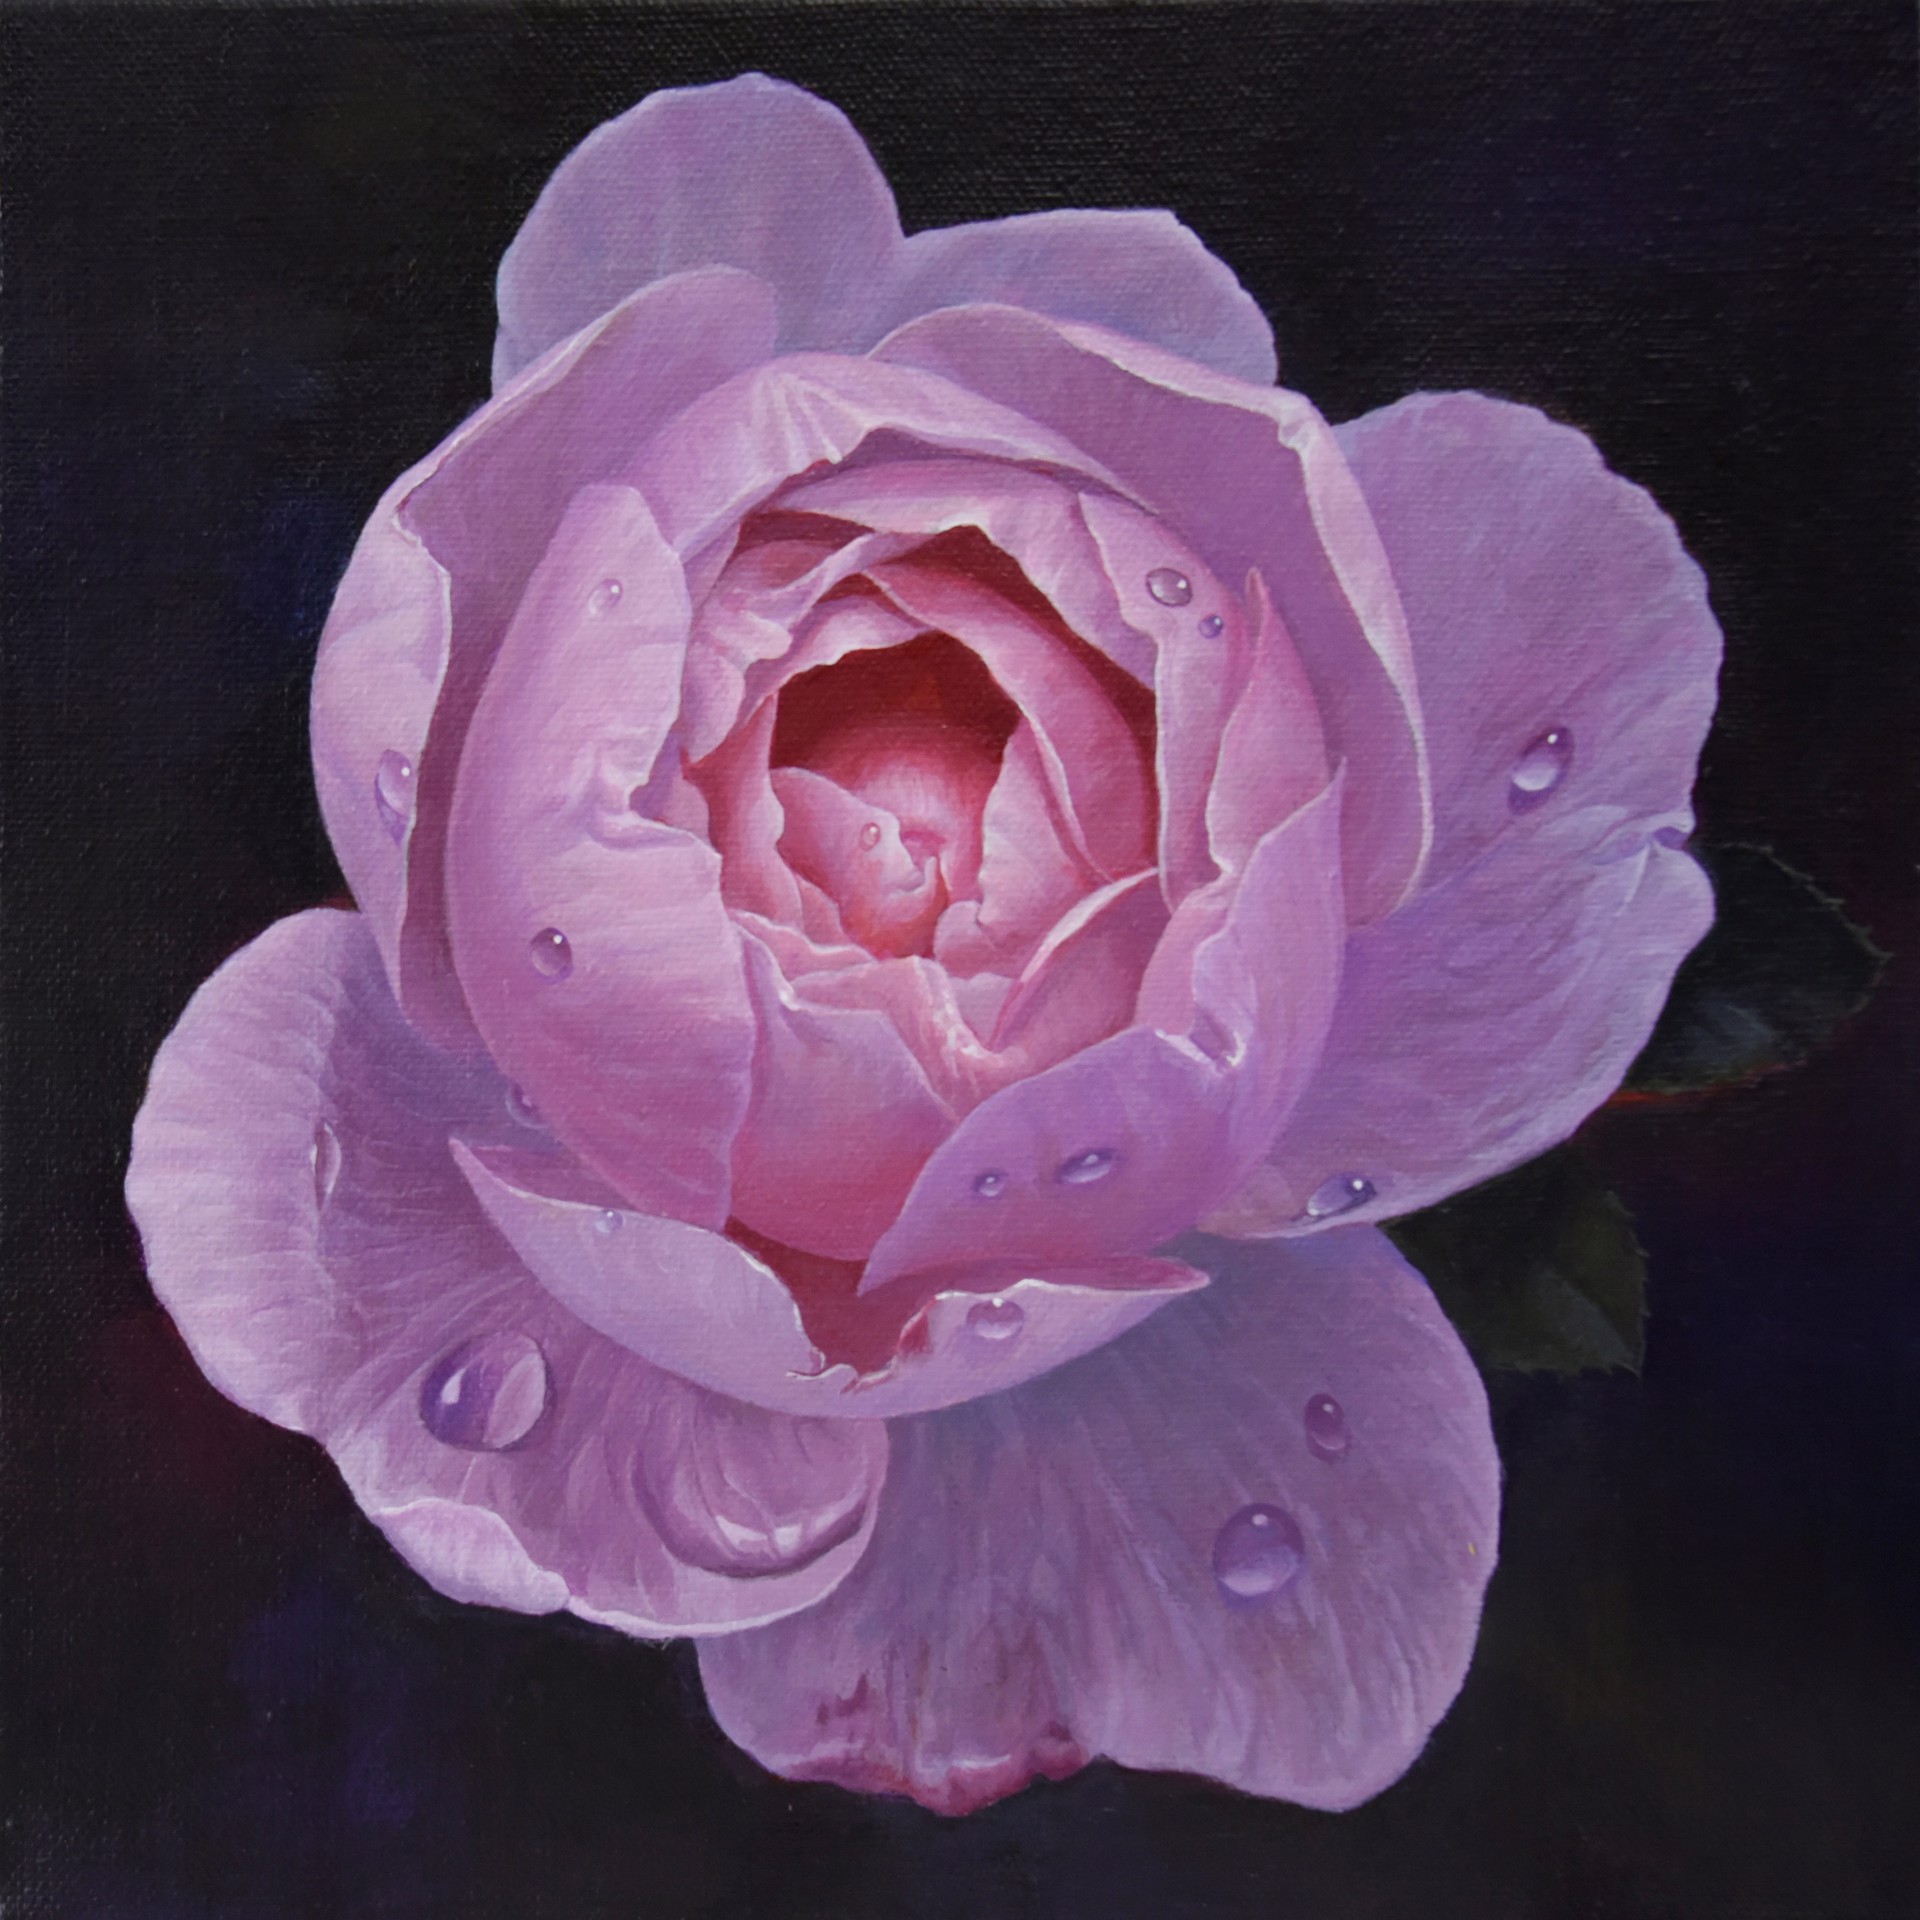 Rose by Paul Art Lee